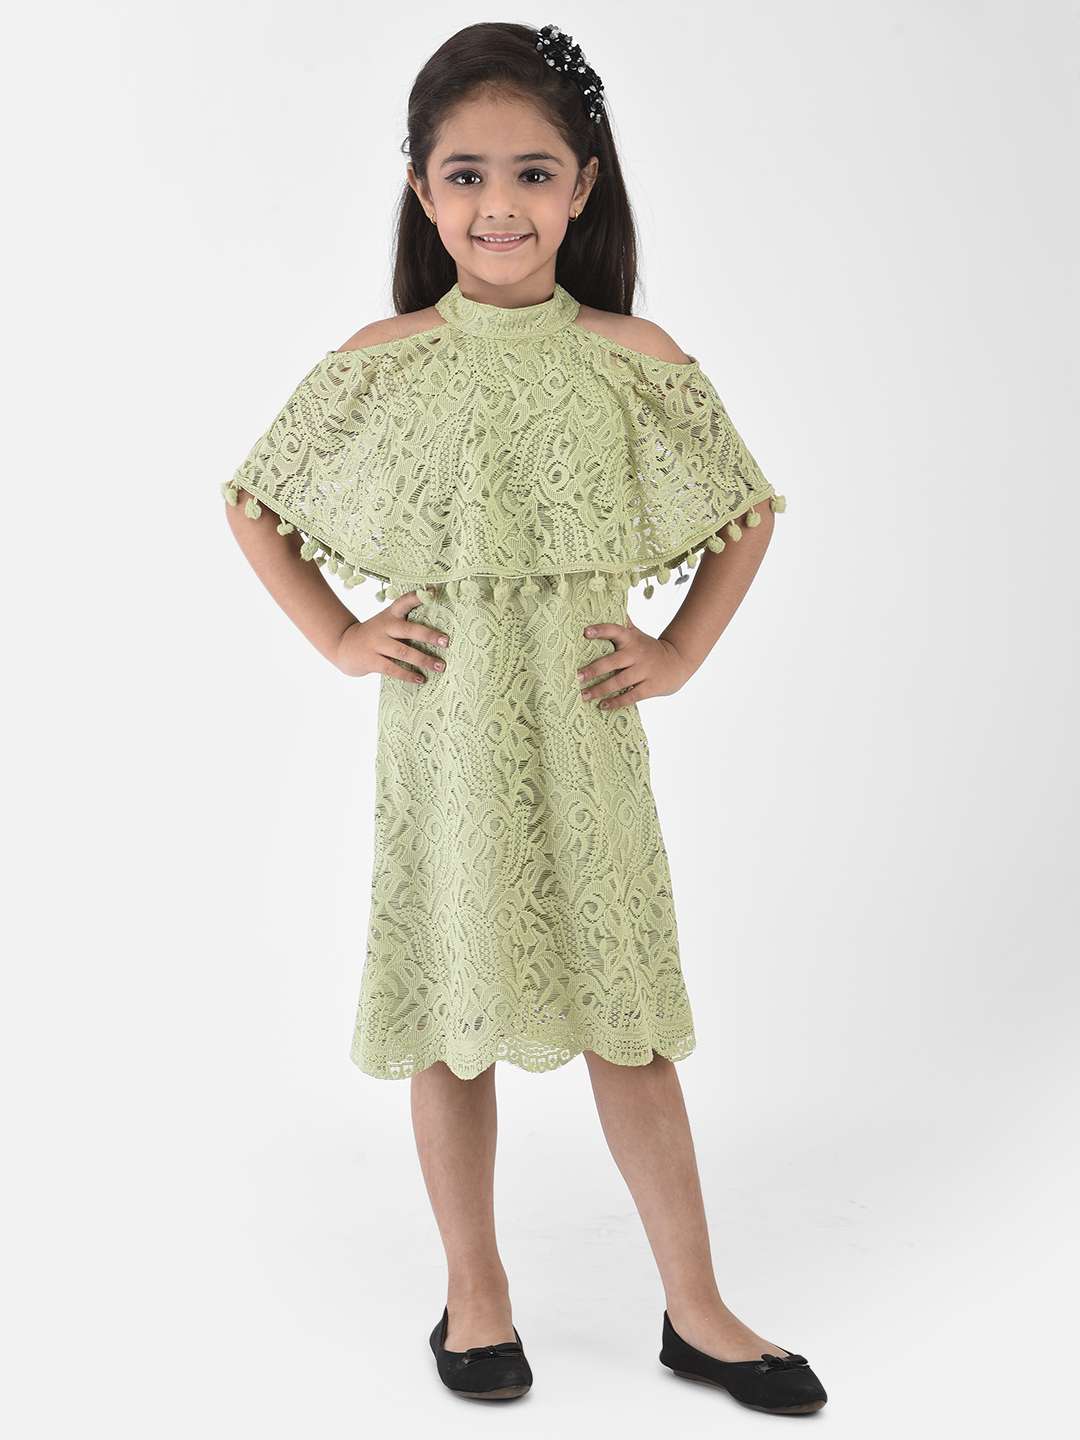 Shop Kids Party Wear Online  Couture Dresses for Girl  wwwliandliin